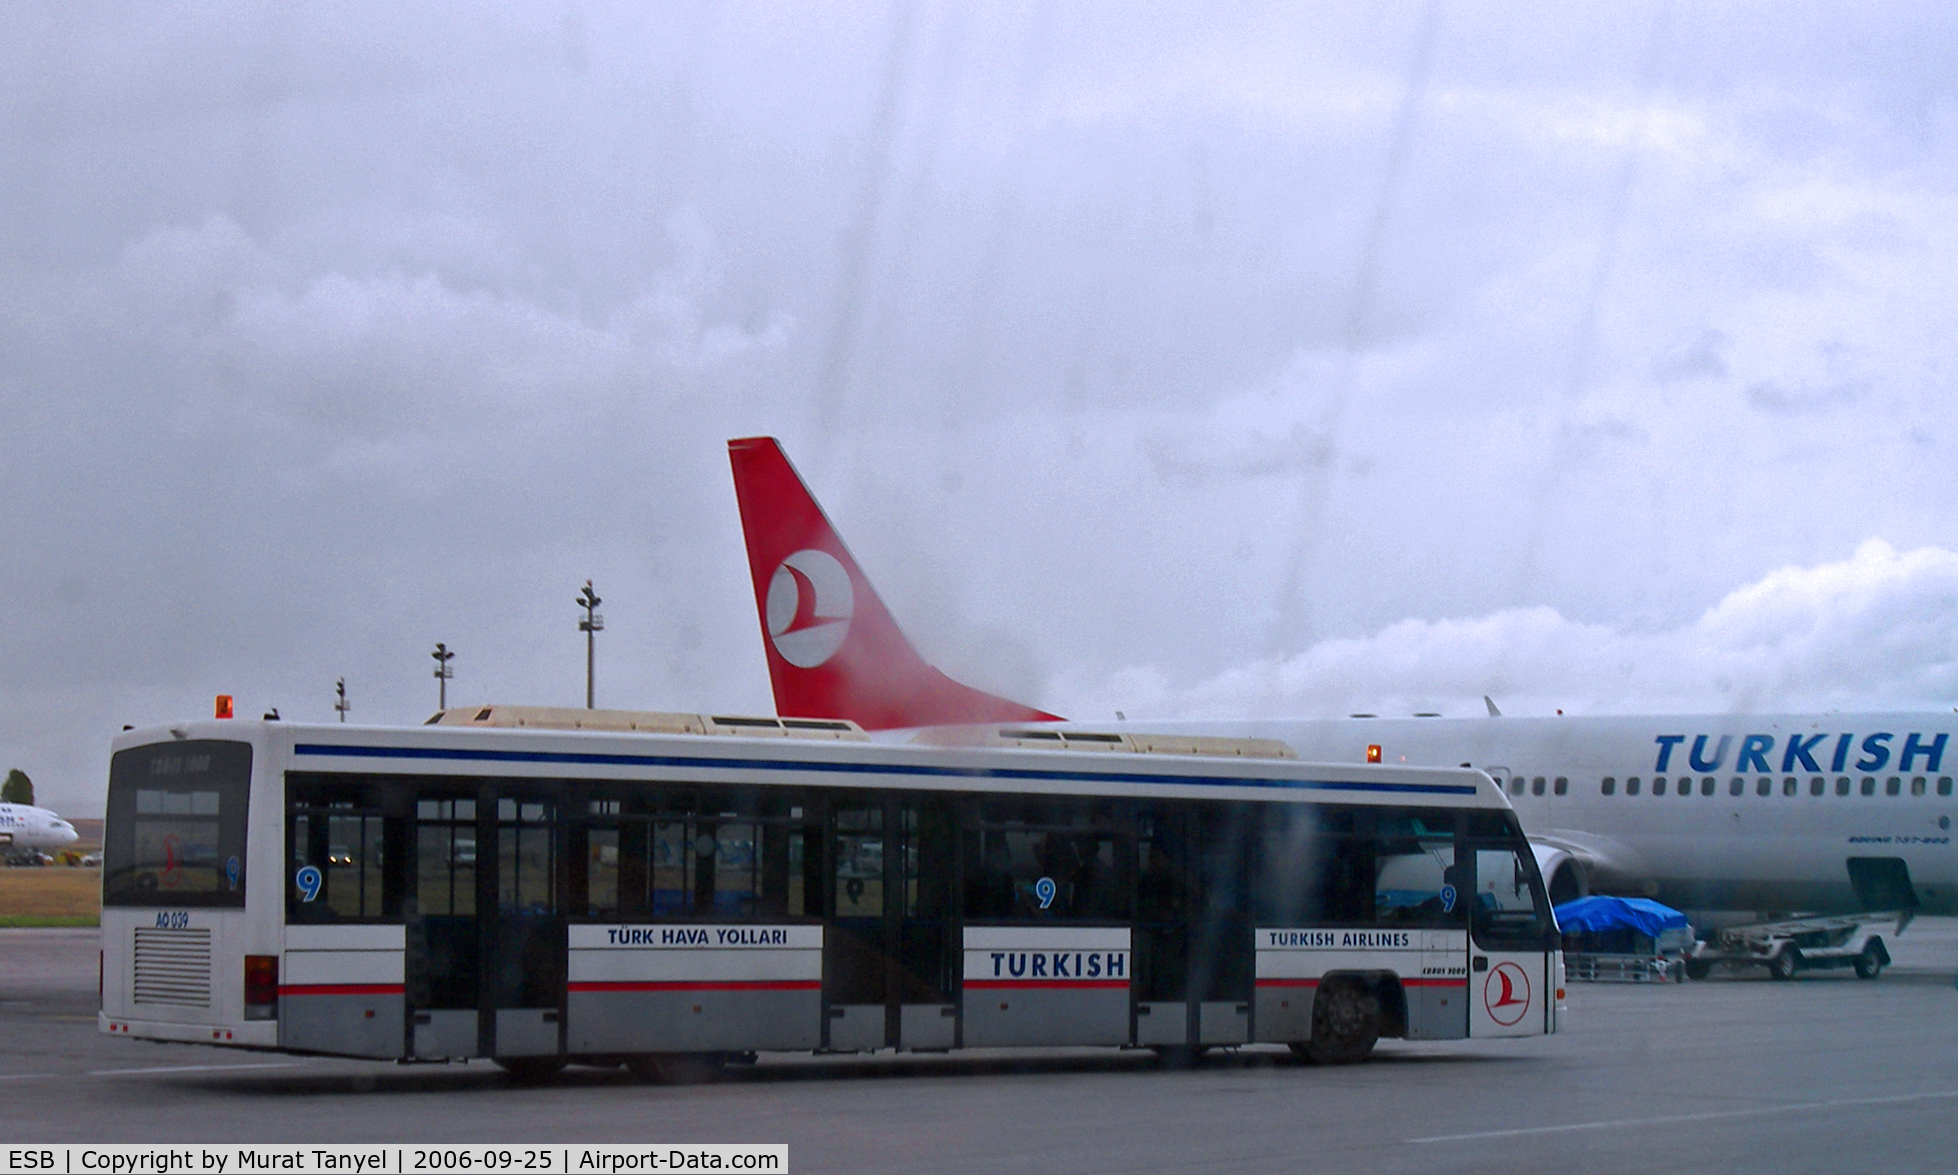 Ankara Esenbo?a International Airport, Ankara Turkey (ESB) - A THY bus taking passengers to their plane